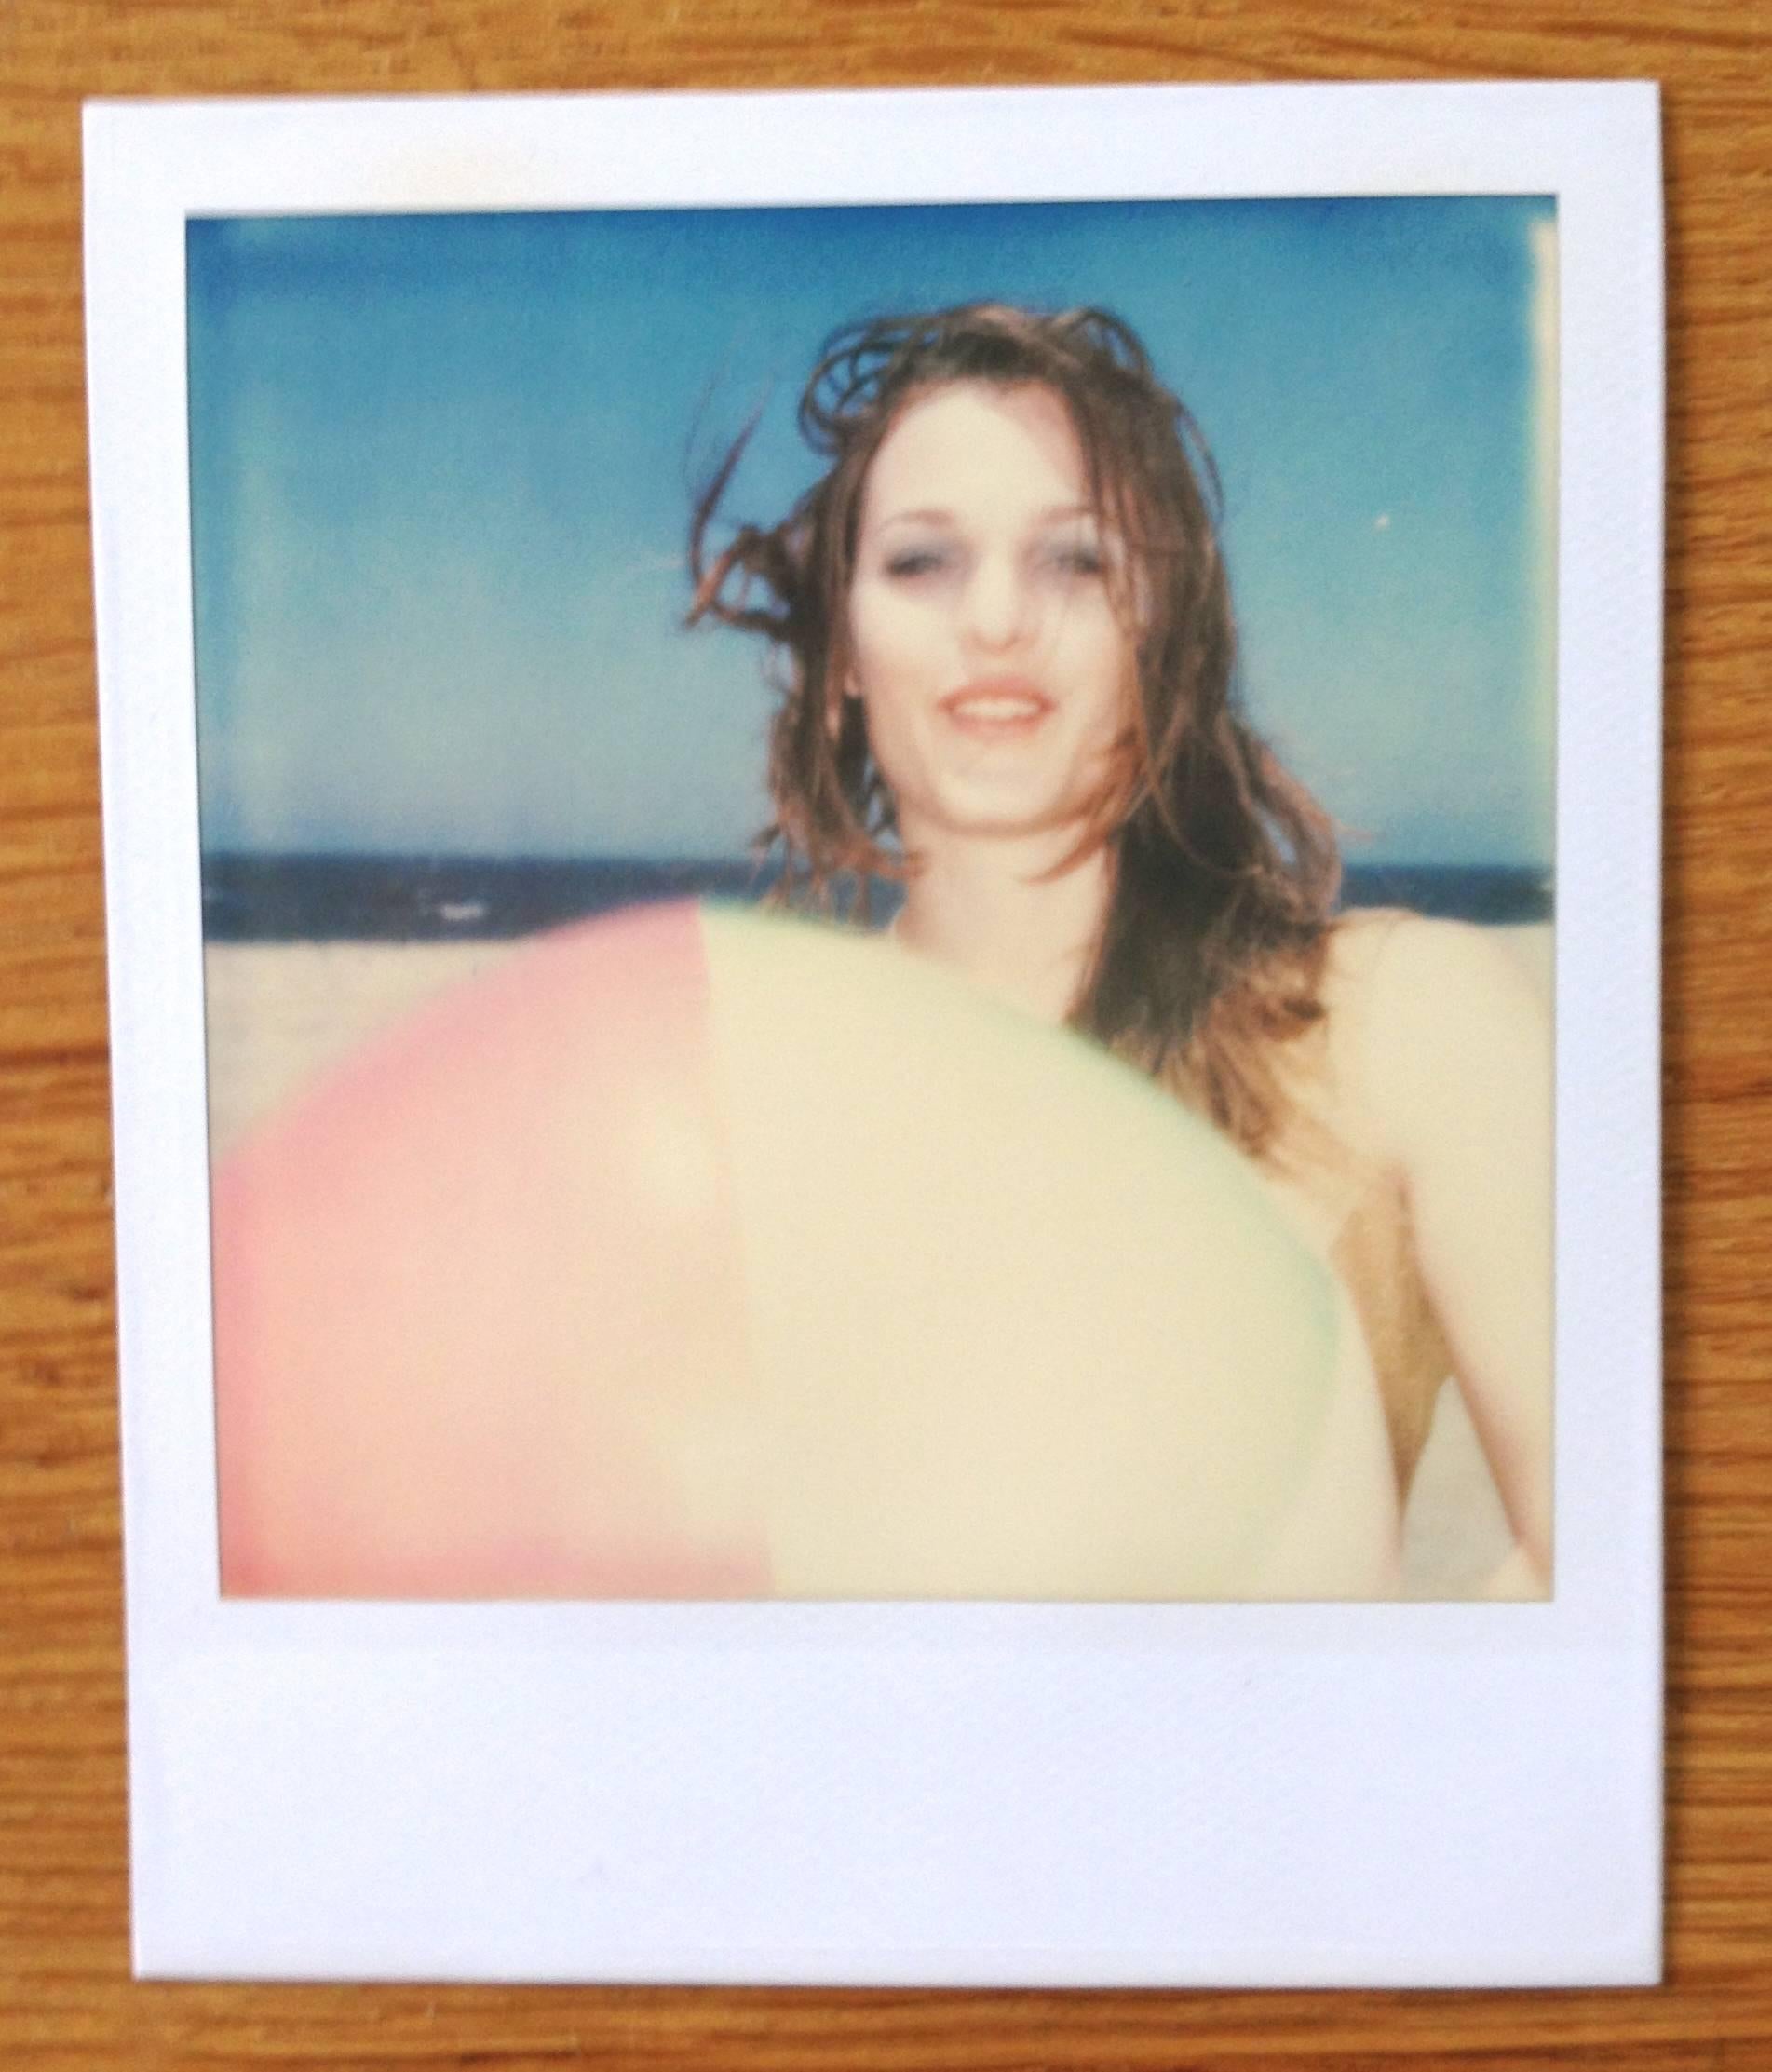 Camille with Beach Ball (Beachshoot) - Original Polaroid Unique Piece - Photograph by Stefanie Schneider